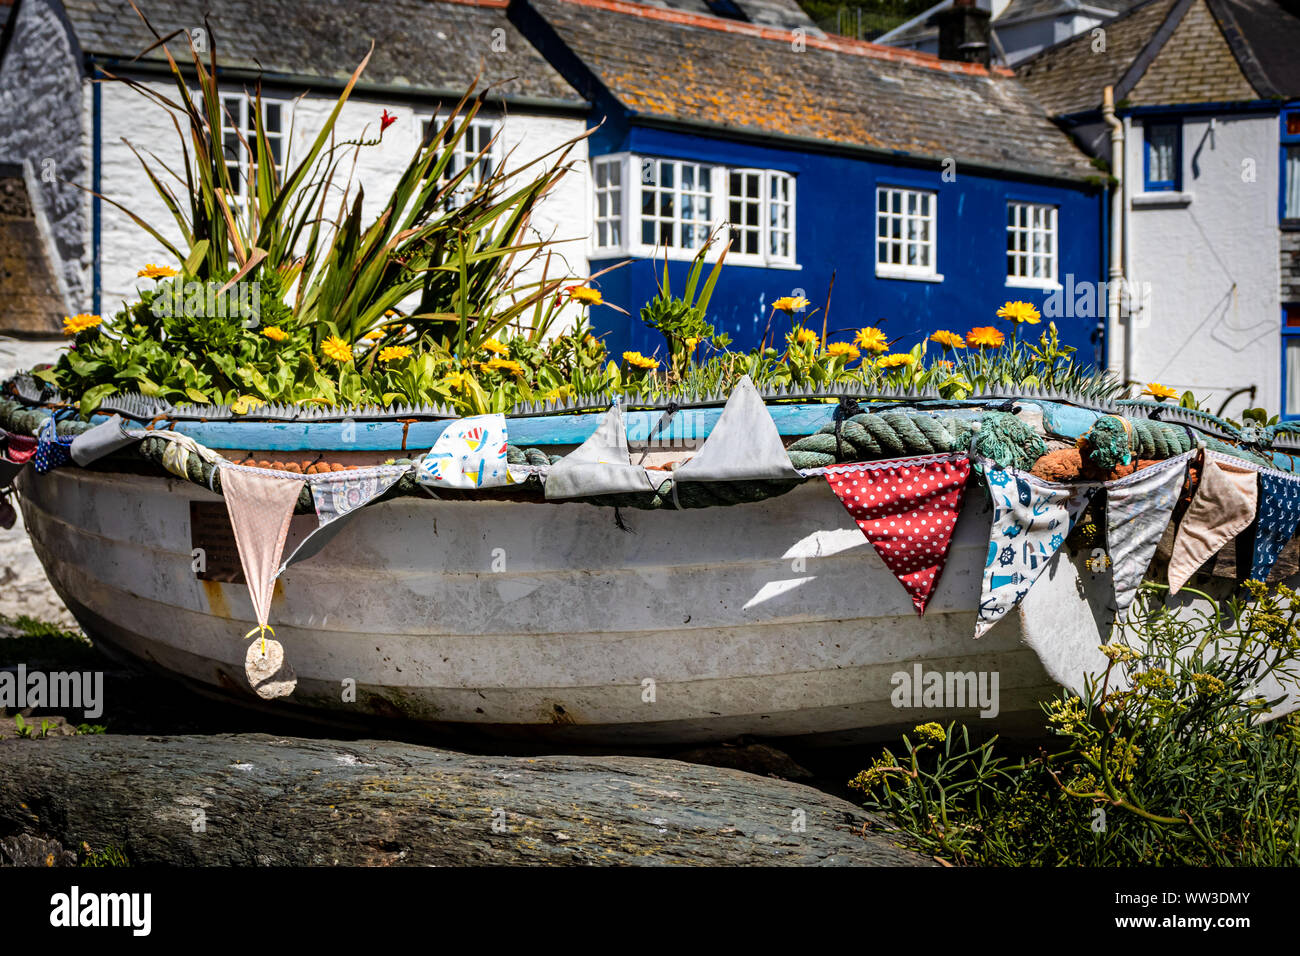 Polperro einer hübschen und bunten Küstenfischerei Dorf praktisch Verkehrsfreien in Cornwall, Großbritannien Stockfoto